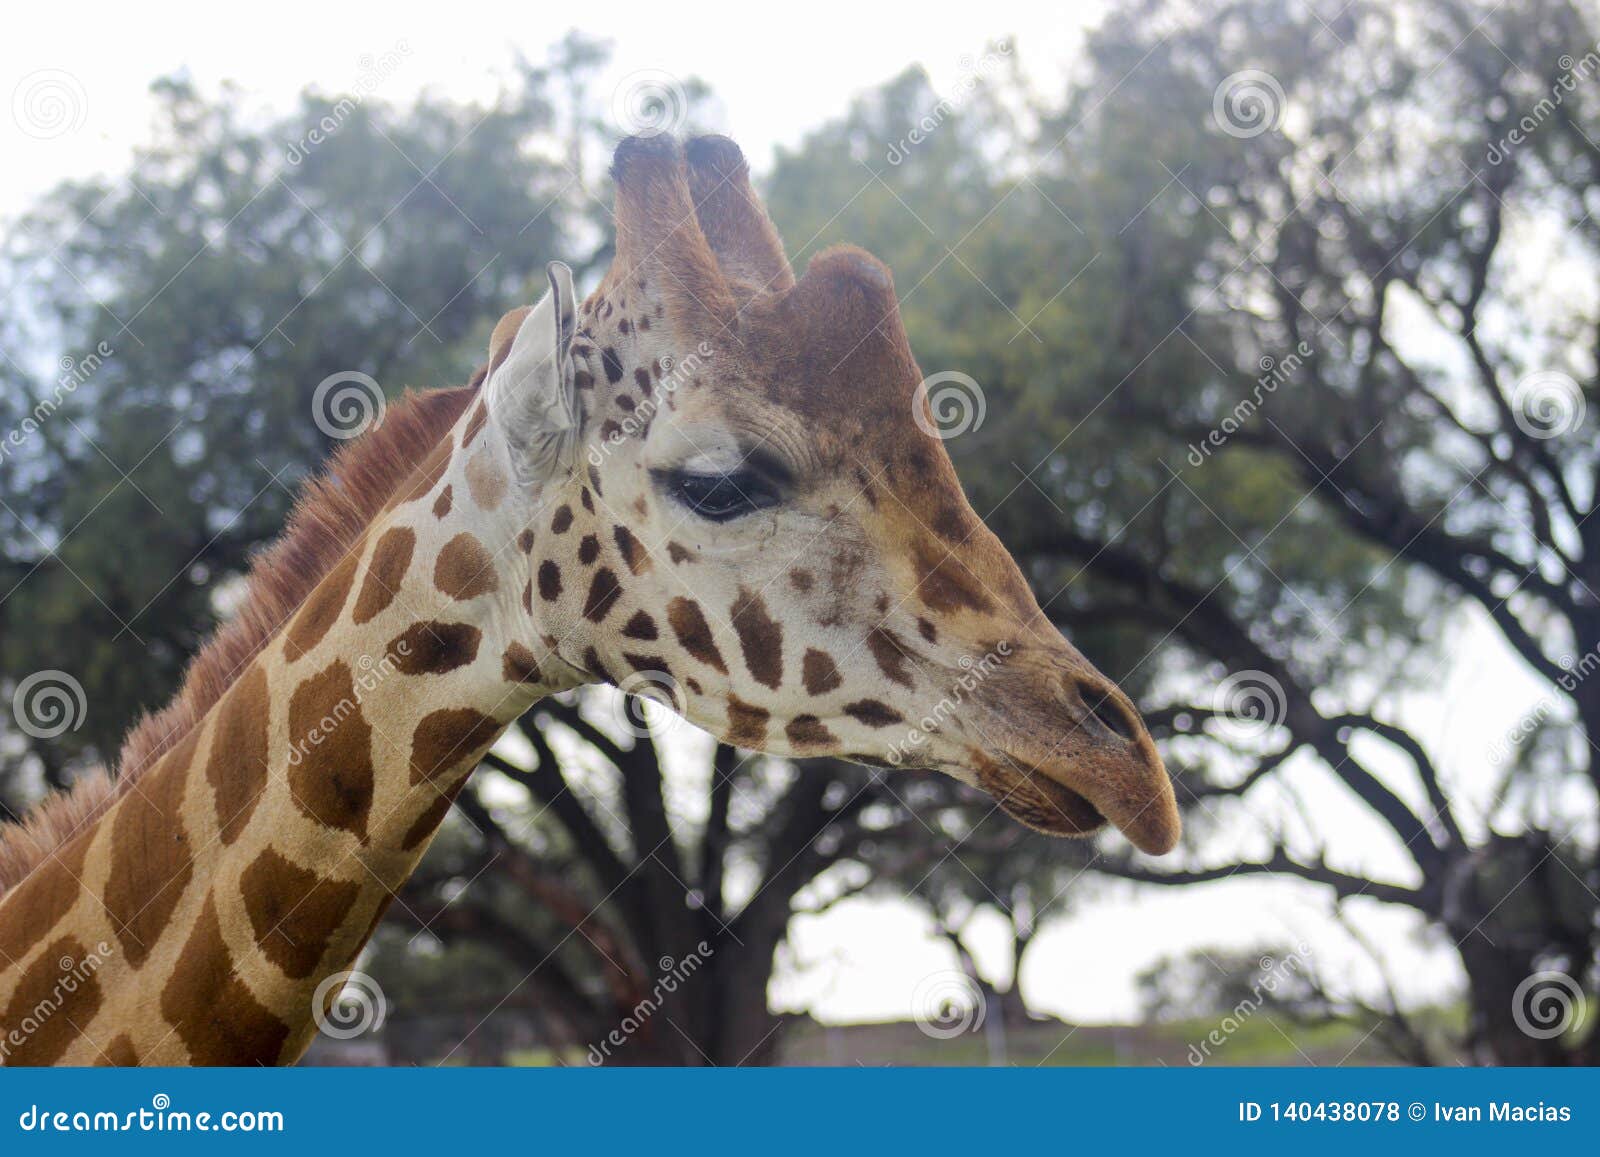 jirafa animal sky giraffe